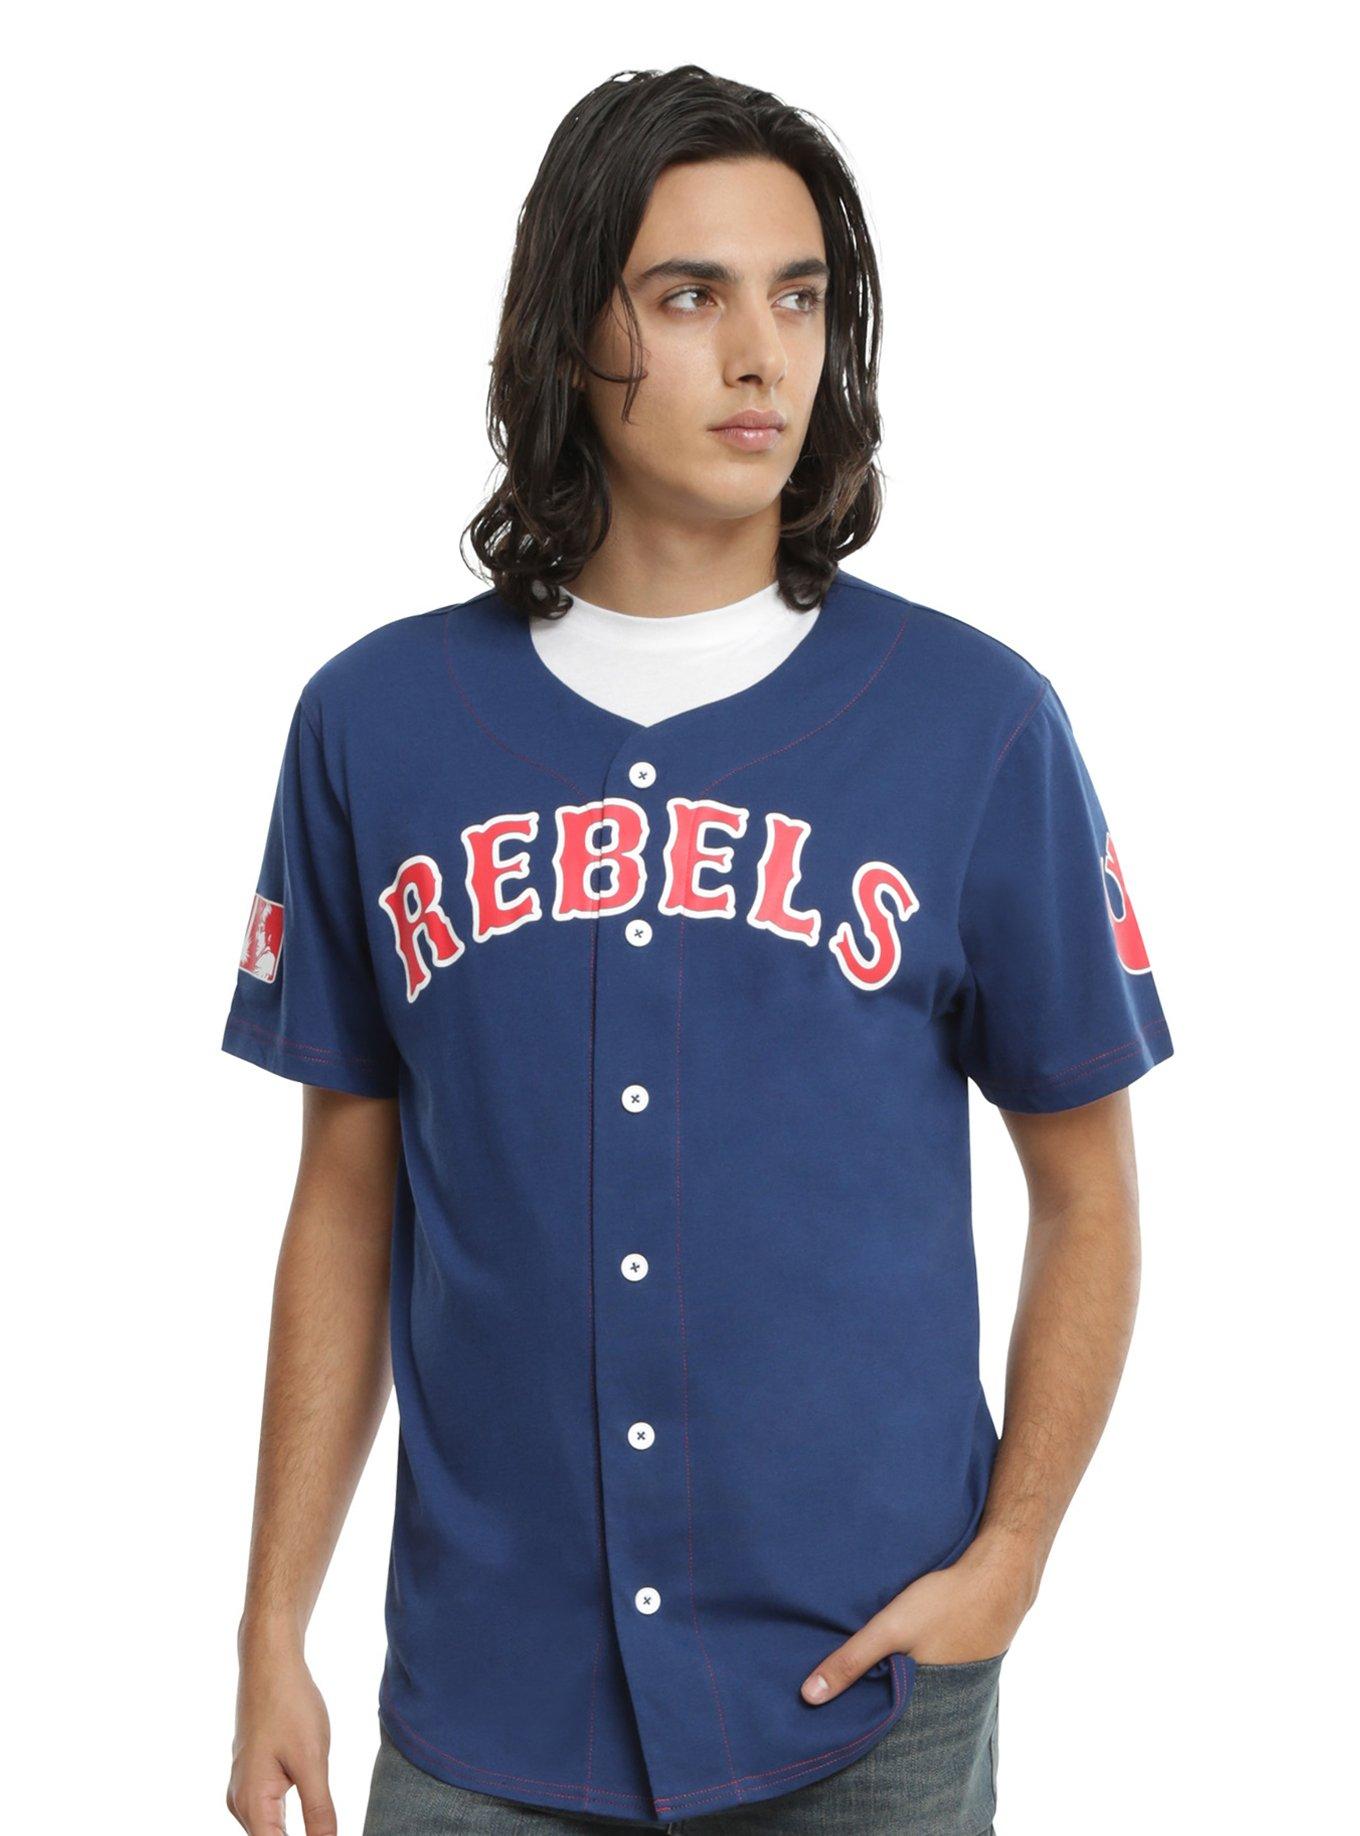 Rebels (Vest) Custom Modern Baseball Jerseys